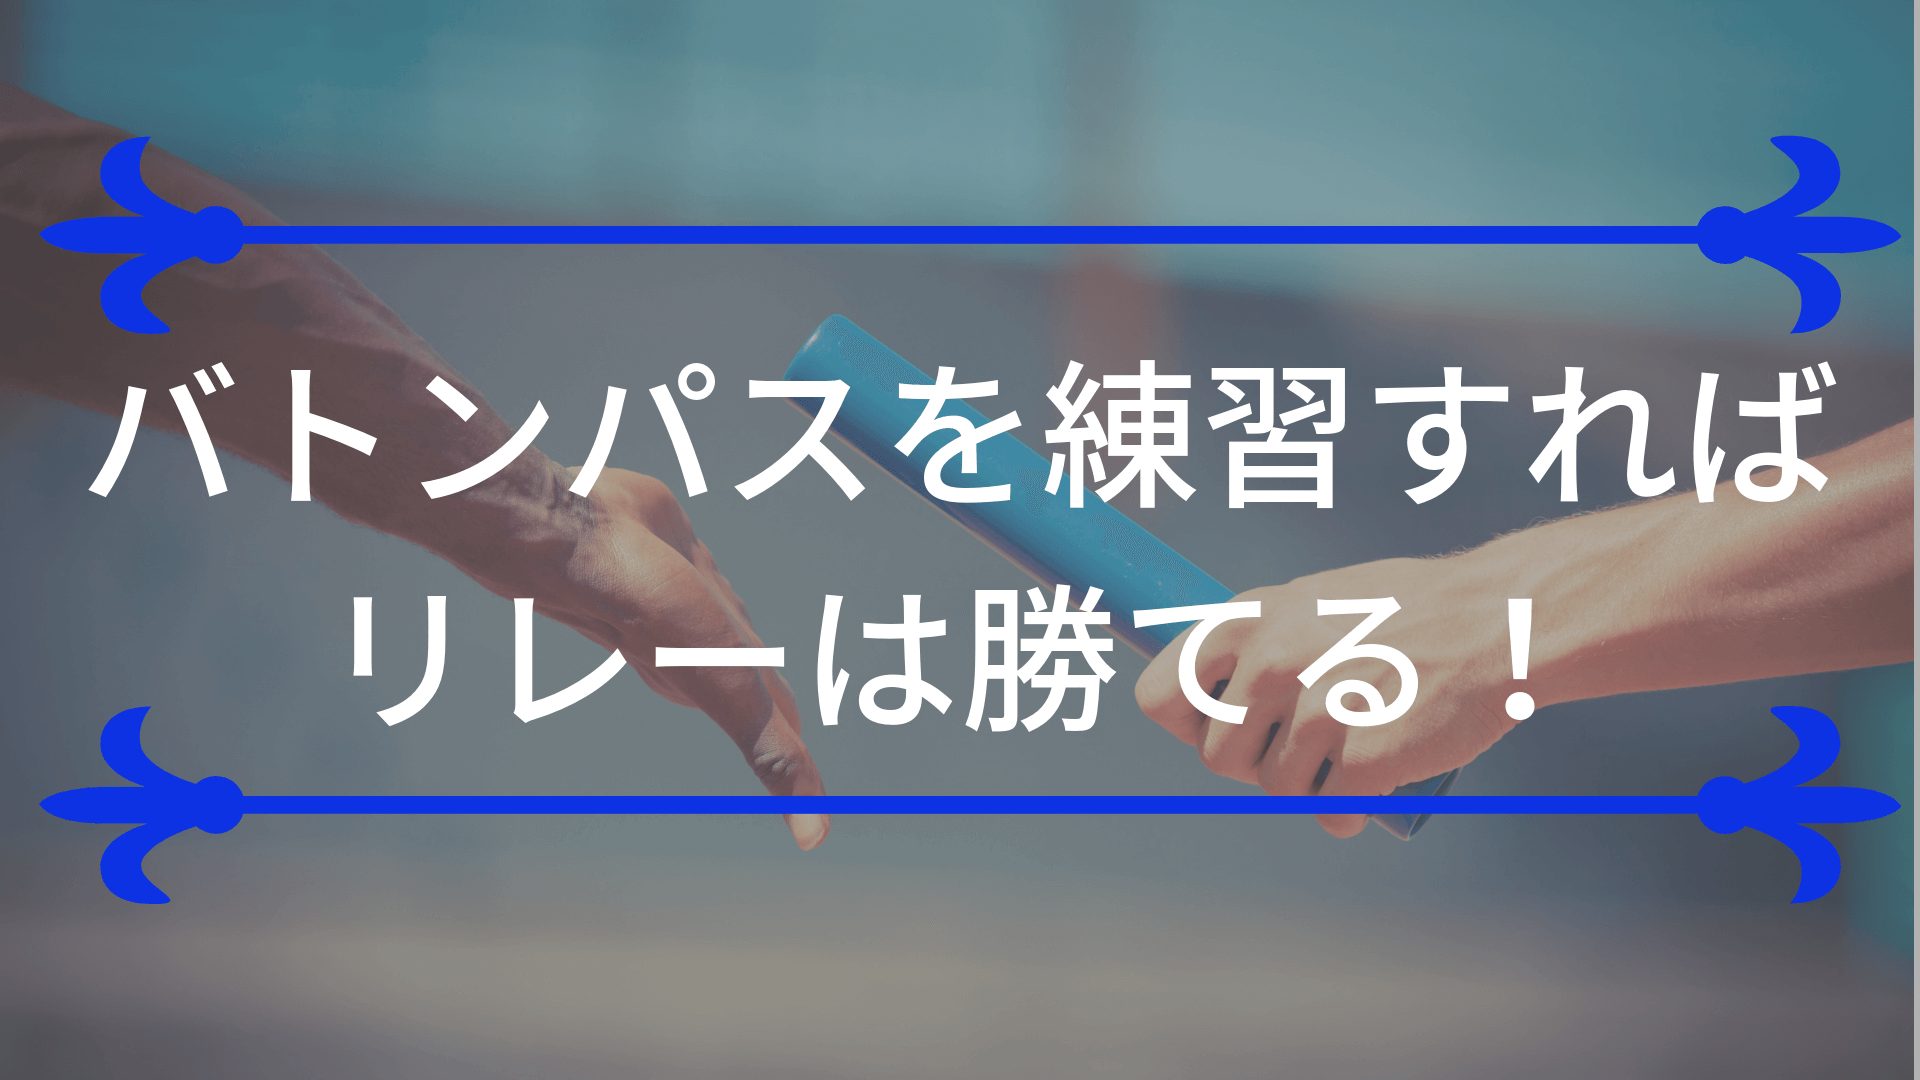 運動会の全員リレーのためにバトンパスの練習をすると優勝できる理由 東京で小学生の足を確実に速くするならgoogle 4 9の陸上アカデミア